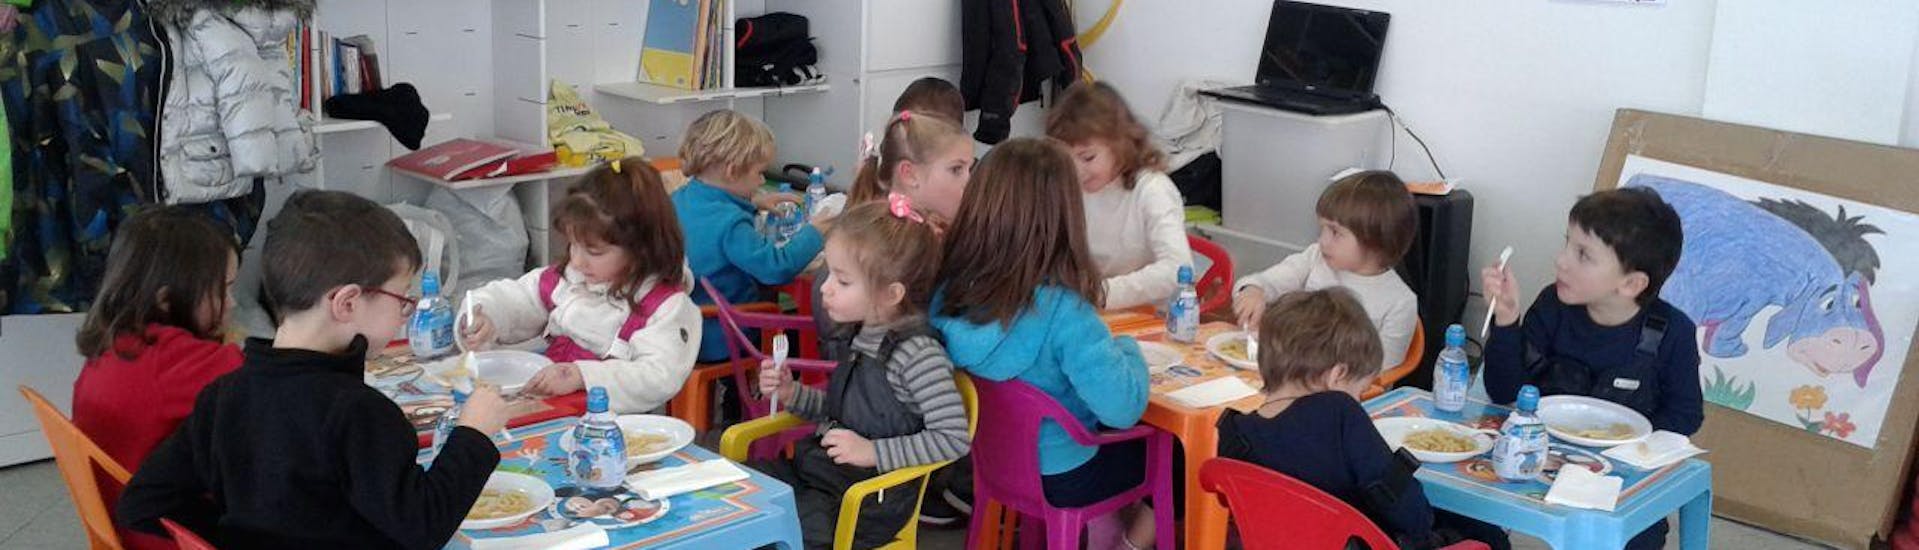 Bambini mangiano durante la pausa a Bormio durante il Mini Club (3-10 anni) con Pranzo.